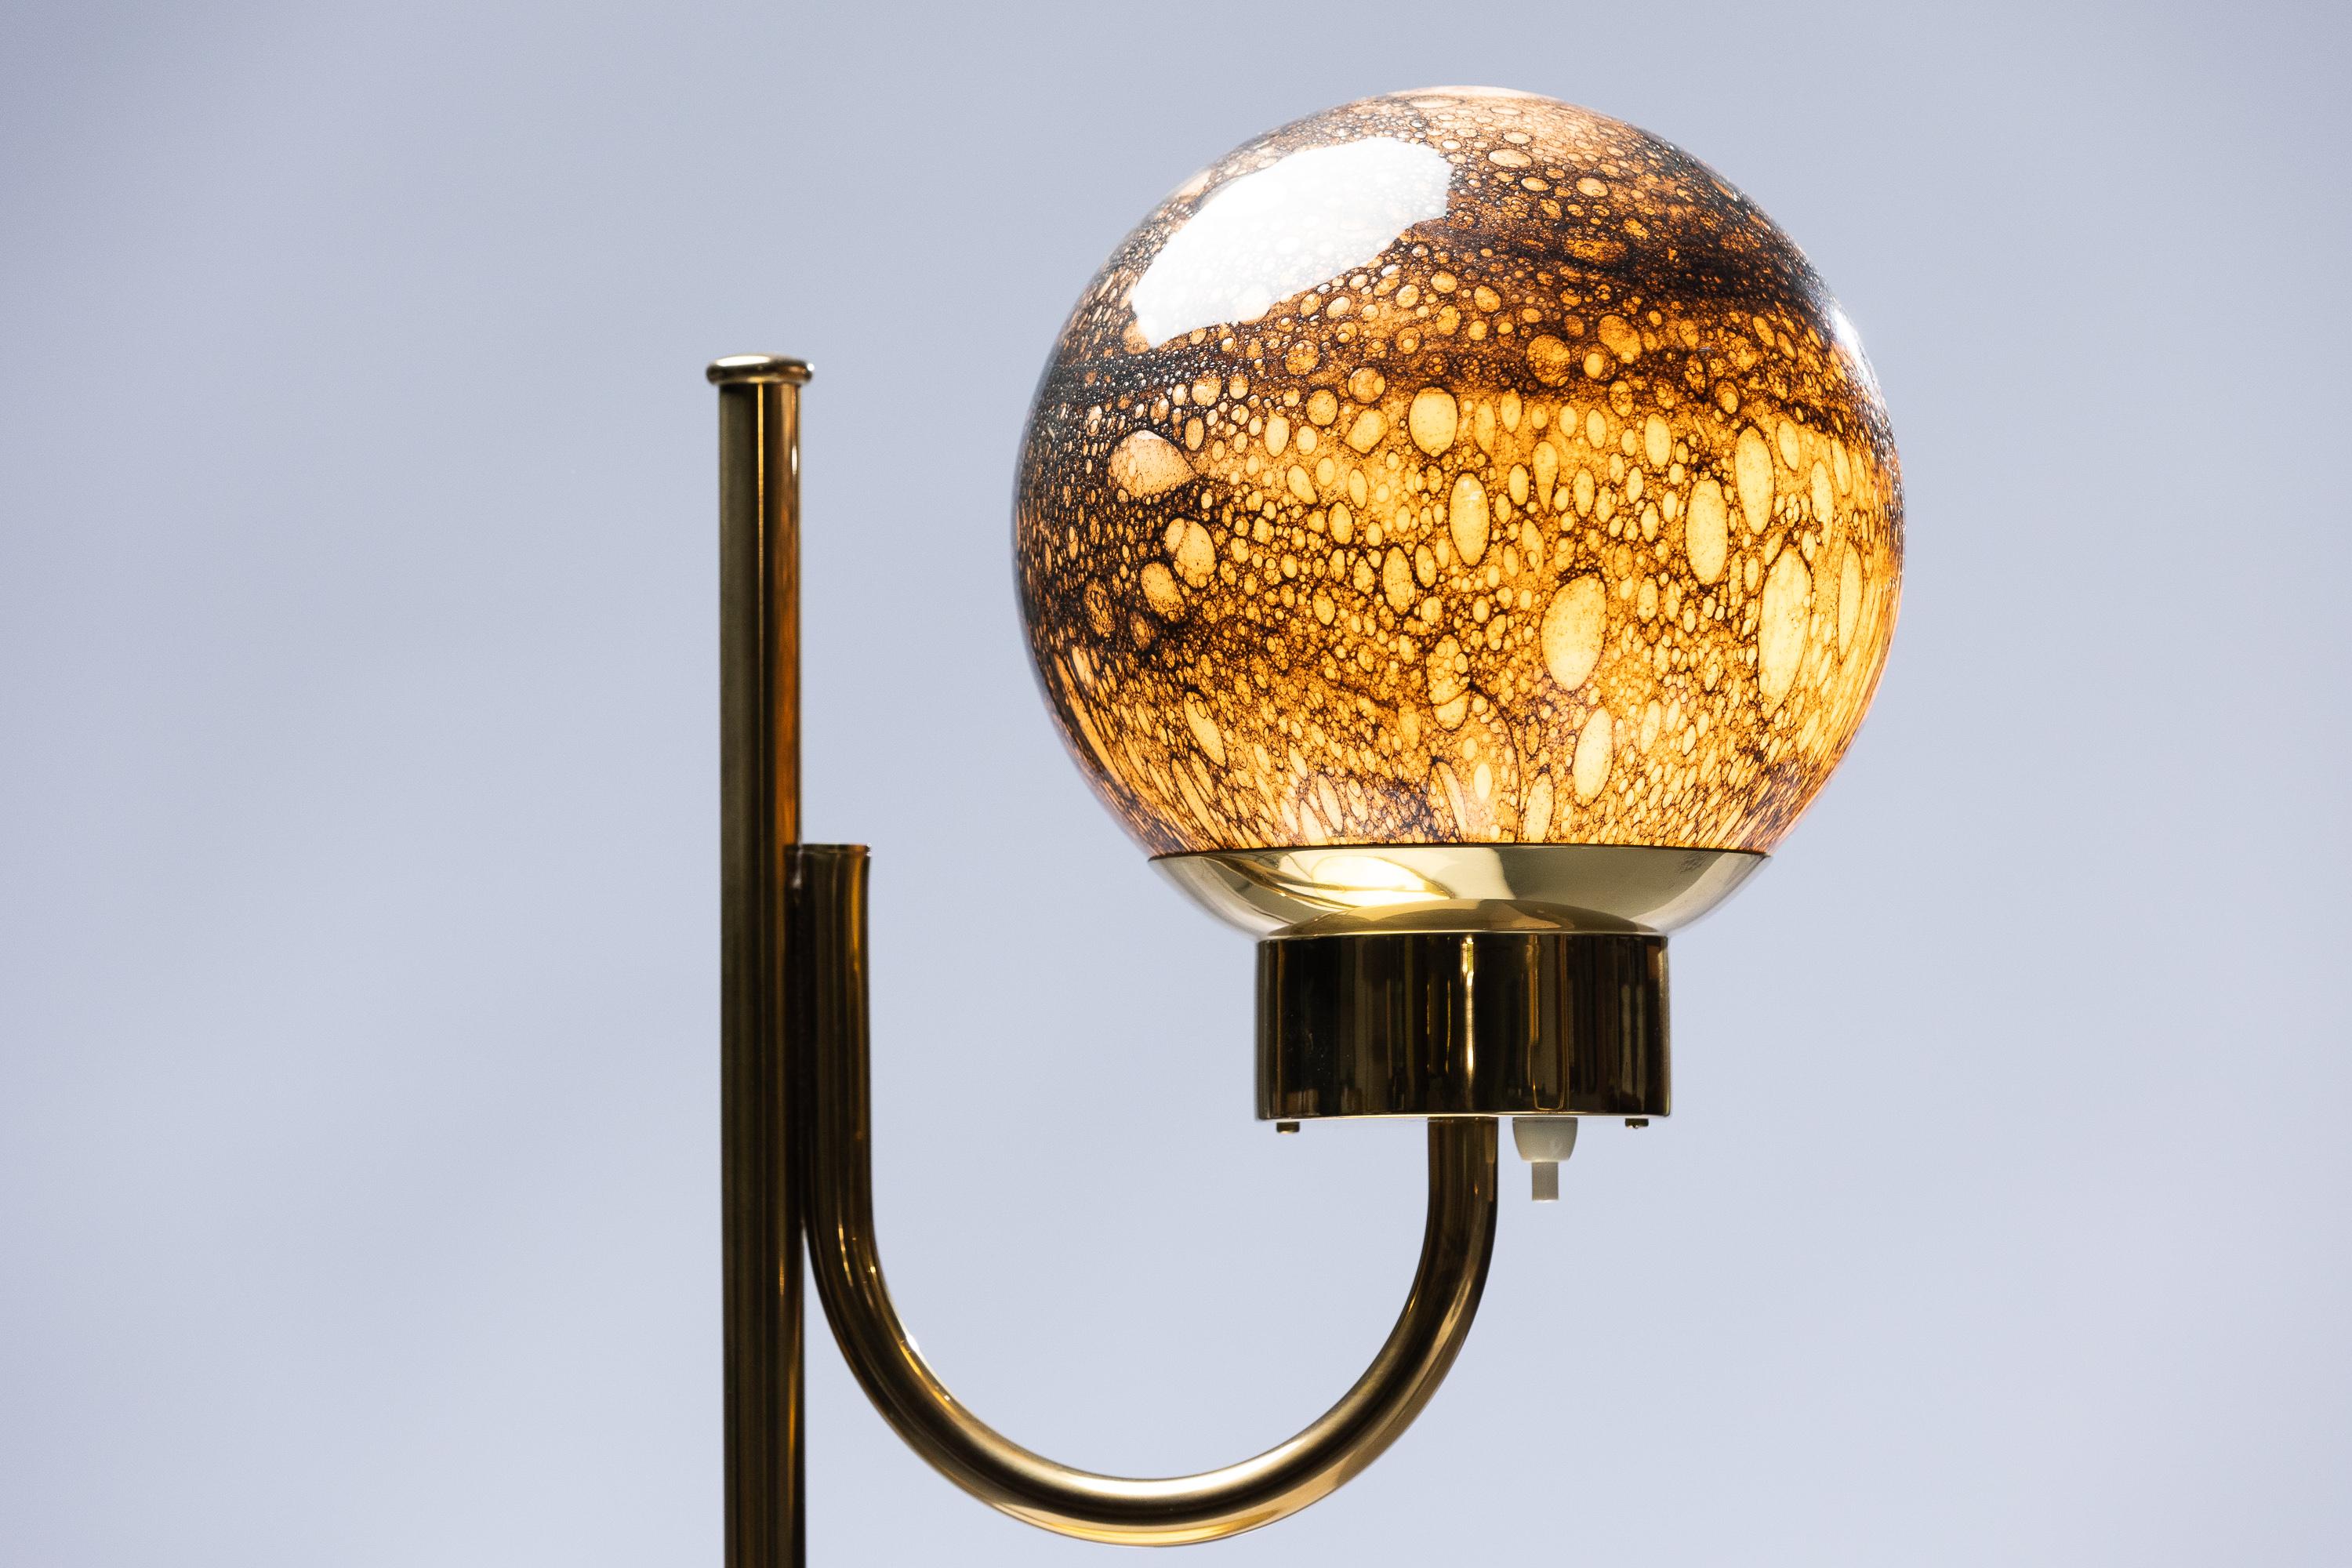 Entdecken Sie die fesselnde Anziehungskraft des skandinavisch-modernen Designs mit einem Paar Bergboms B-118 Tischlampen, die aus hochwertigem Metall, einschließlich glänzendem Messing, gefertigt und mit eleganten Glasschalen verziert sind. Werten